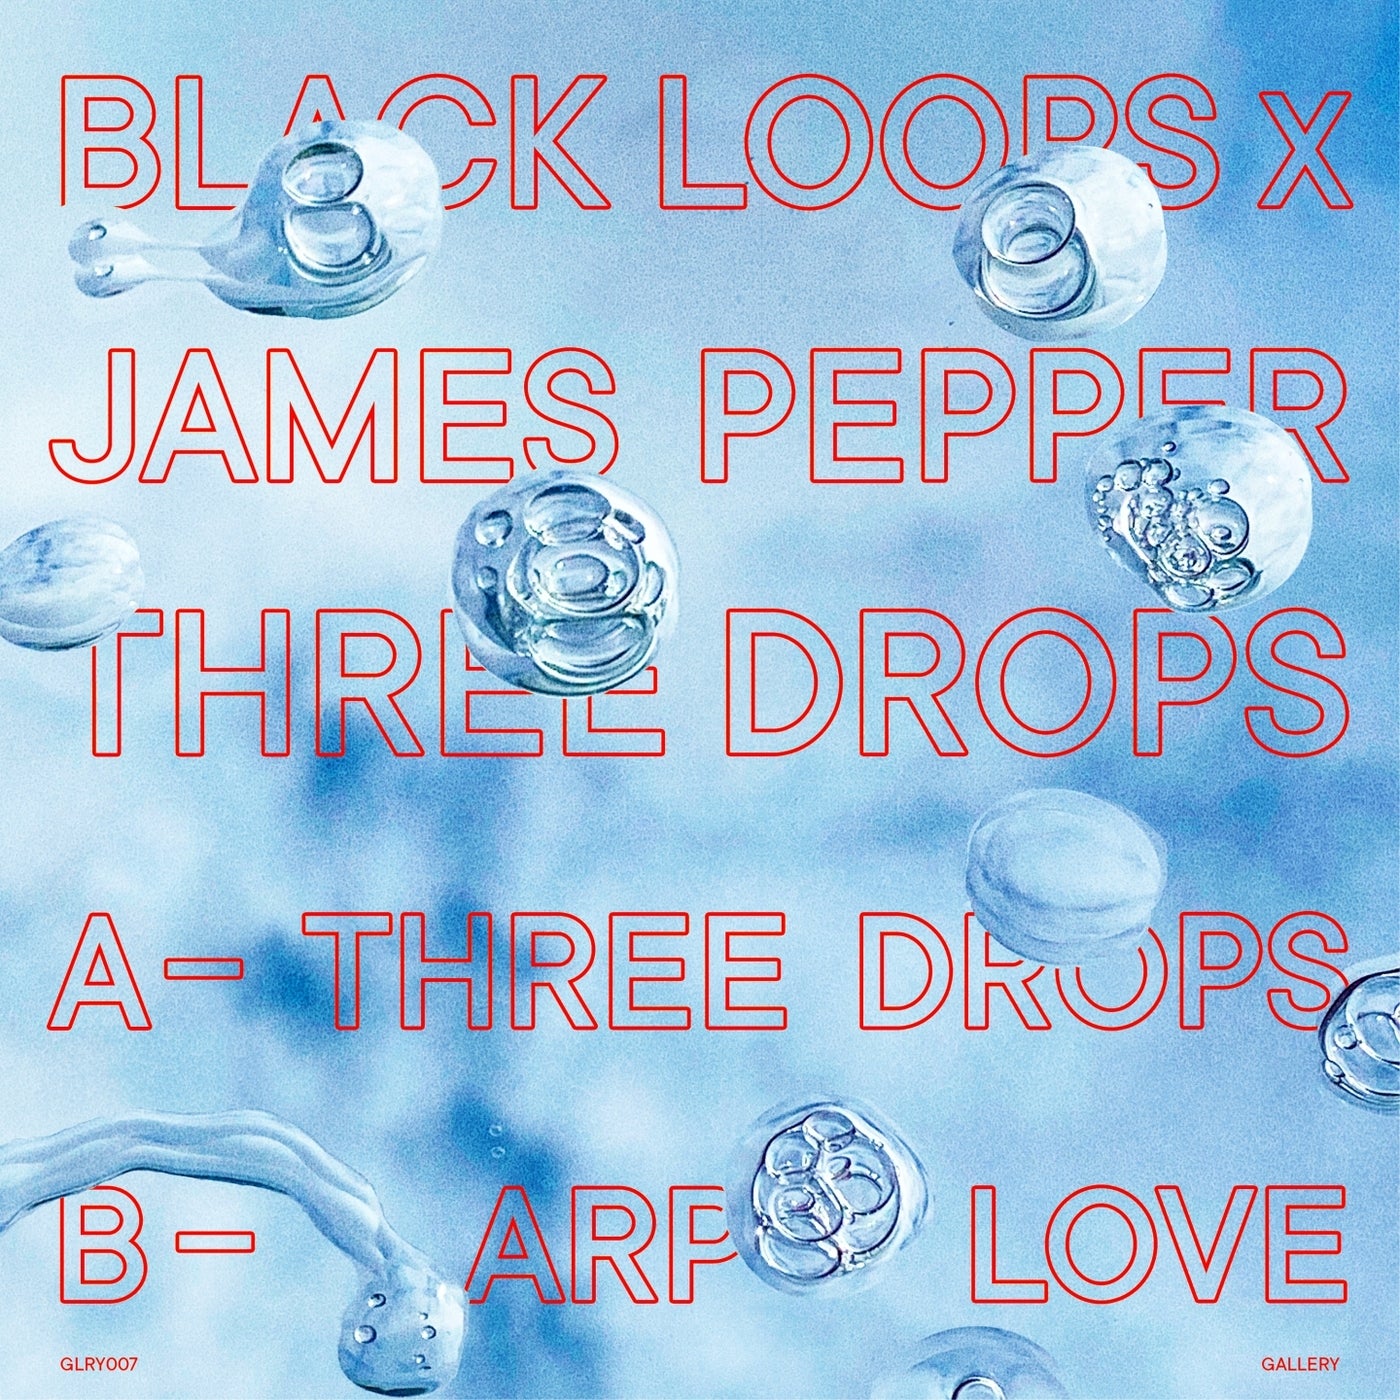 Mp3 pepper. Black loops & James Pepper - three Drops. Frooty loop 3 год выпуска. Exploratory loops James Bach.